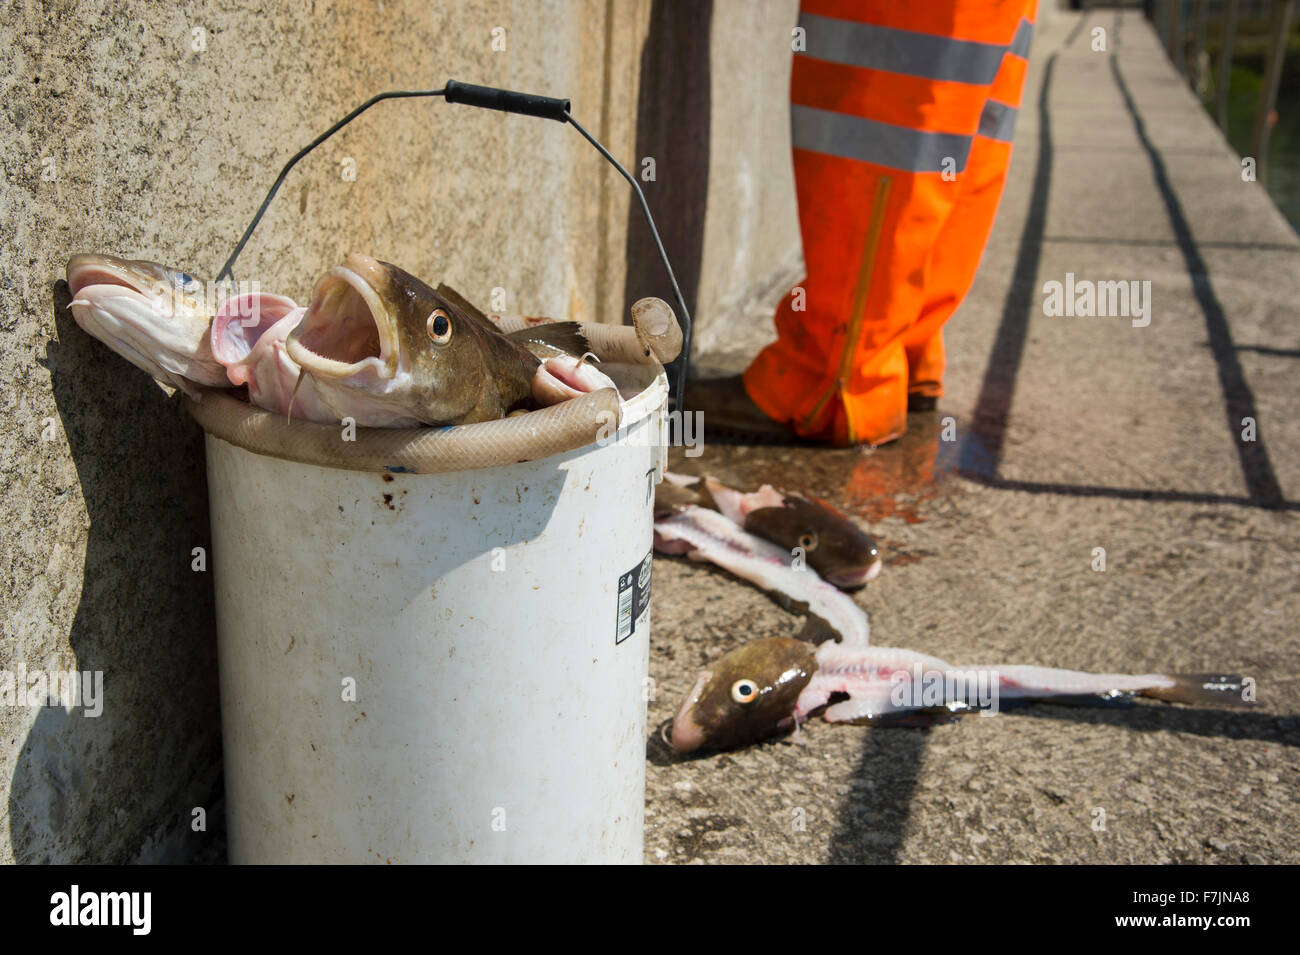 Close-up of fresh captures de morue morte dans une benne, prêt à être détruit par le pêcheur debout au-delà - Staithes Harbour, North Yorkshire, GB, au Royaume-Uni. Banque D'Images